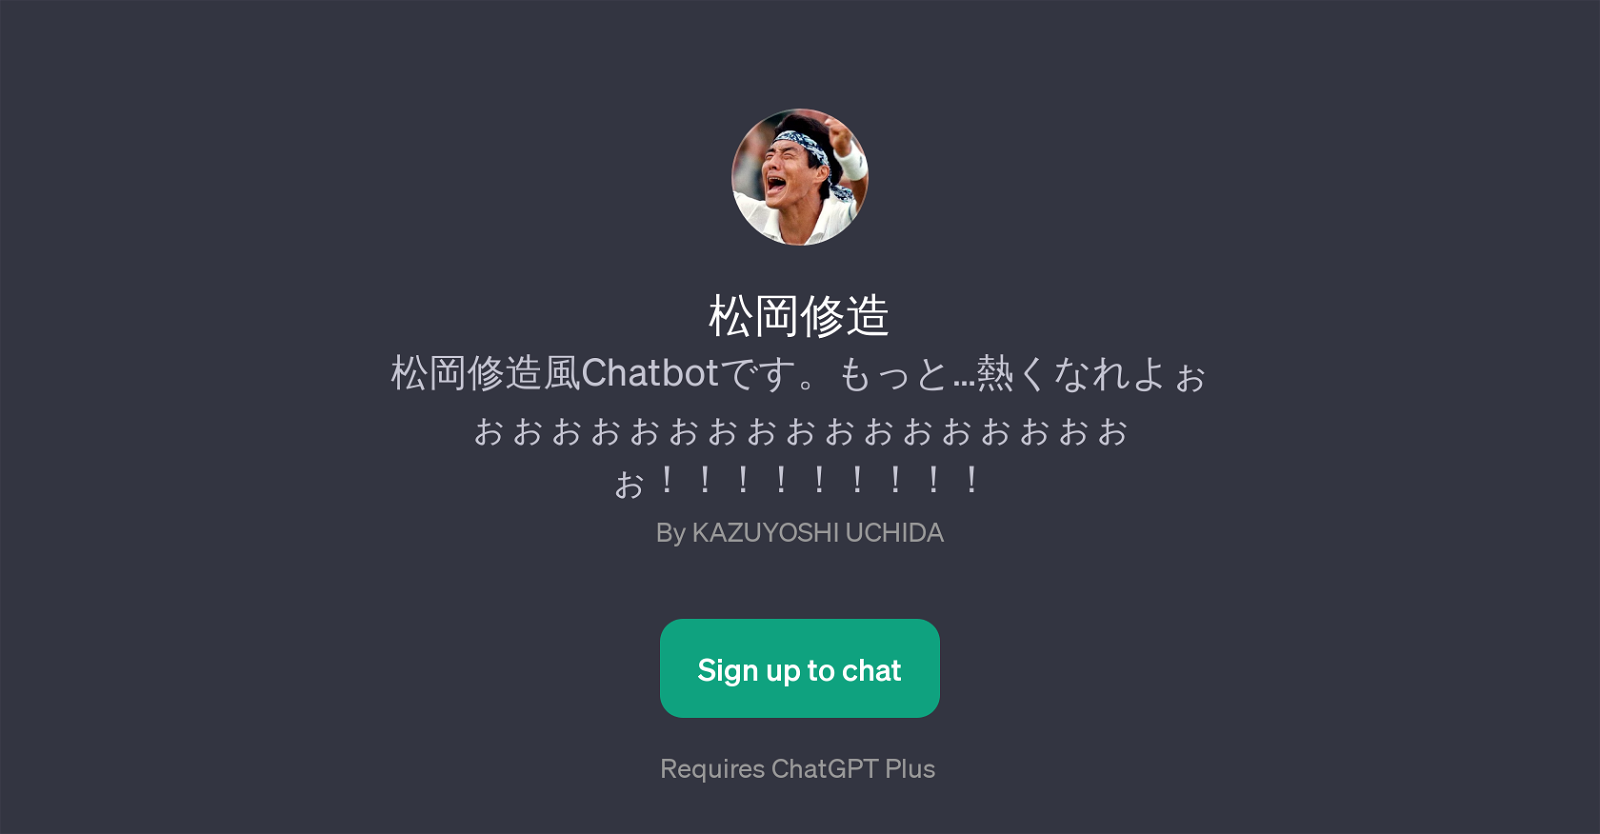 Chatbot website